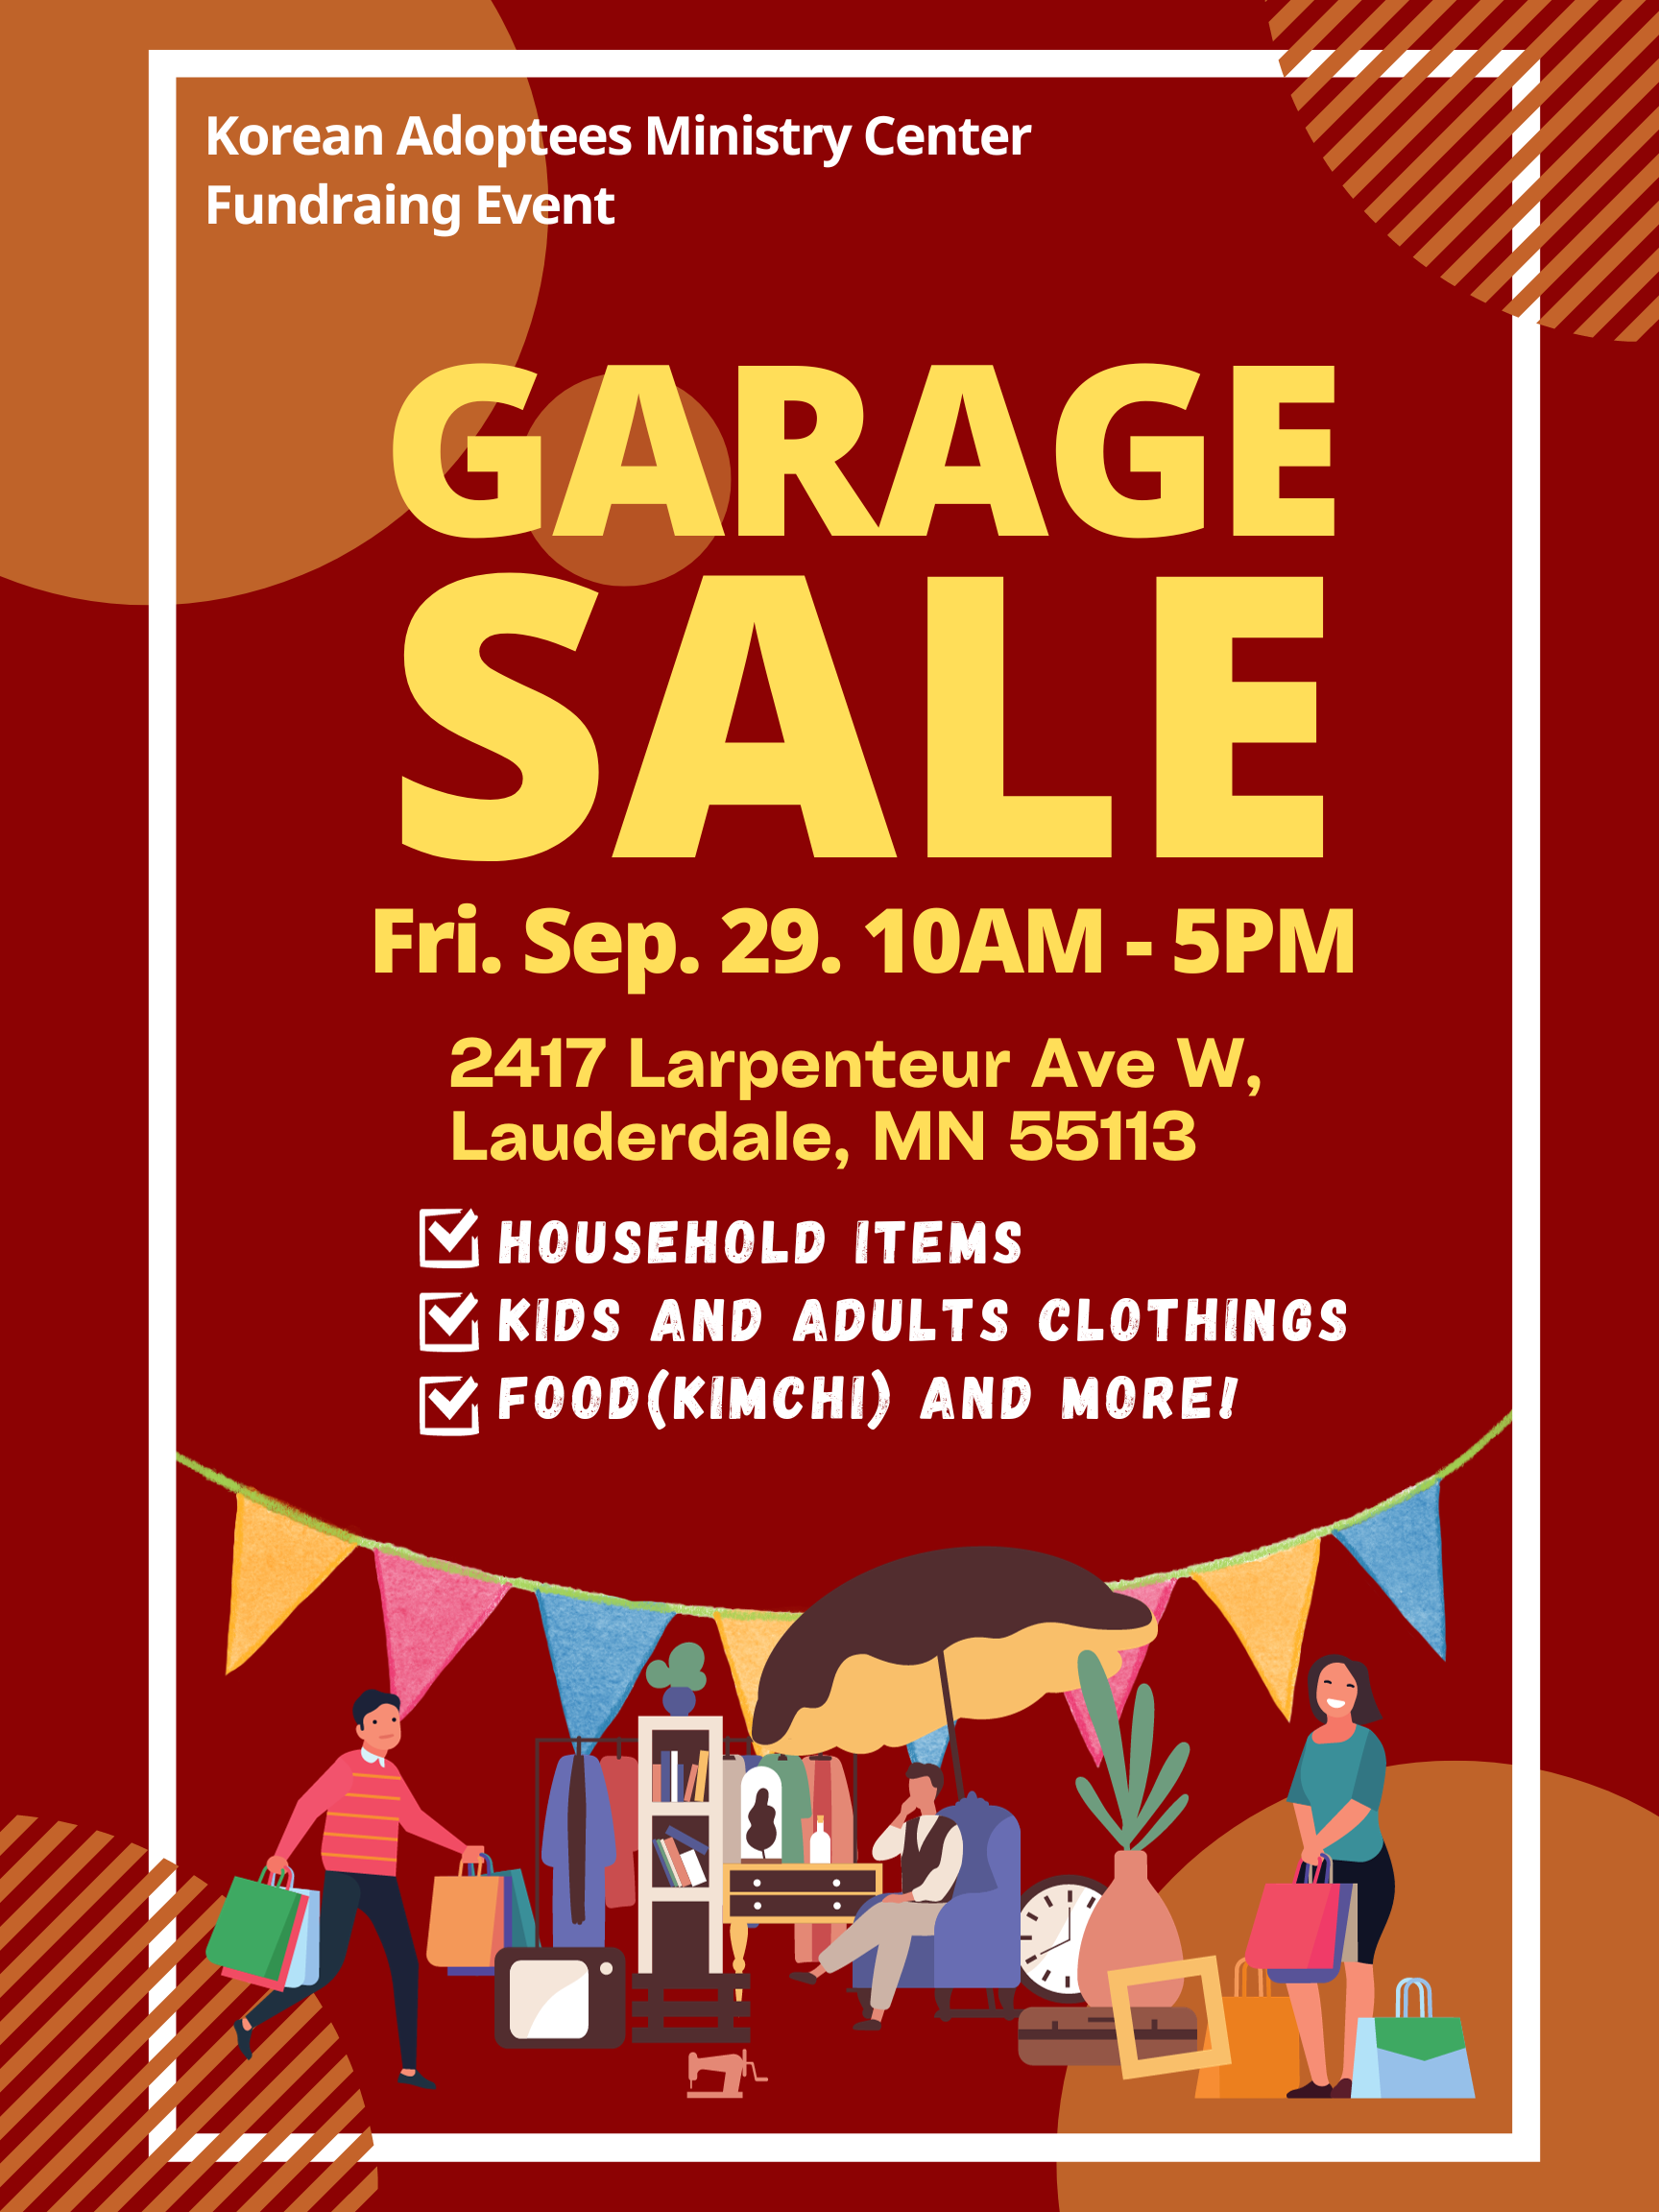 KAM Center - Garage sale.png